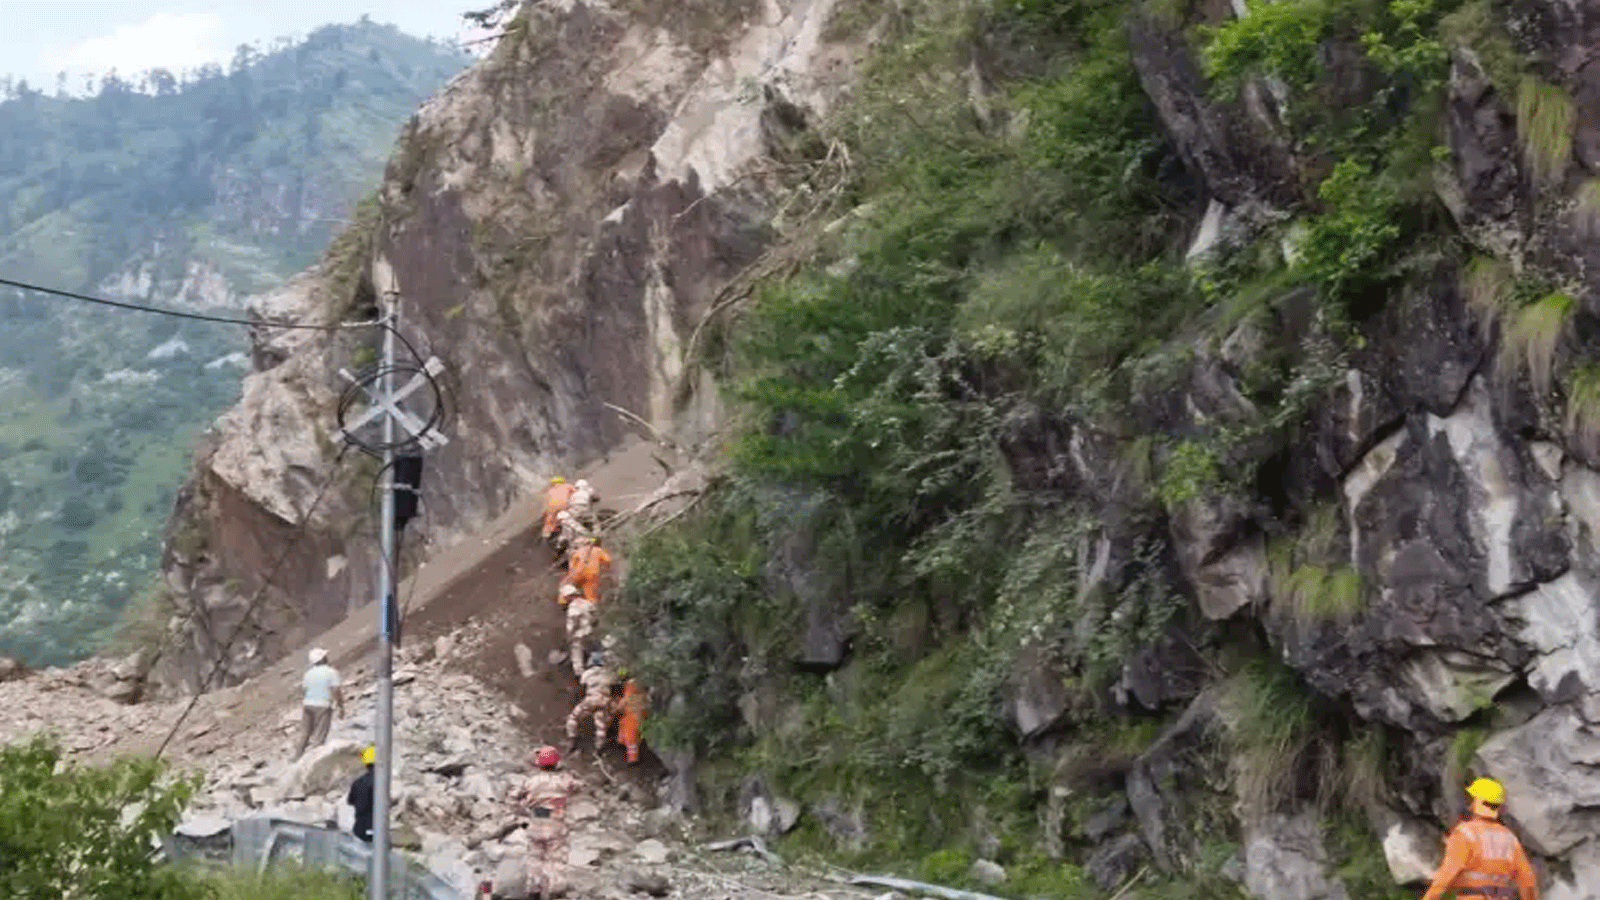 أفراد القوة الوطنية للاستجابة للكوارث أثناء عمليات الإنقاذ في موقع الانهيار الأرضي في الطريق السريع Reckong Peo-Shimla في منطقة كينور في هيماشال براديش(أرشيفية)